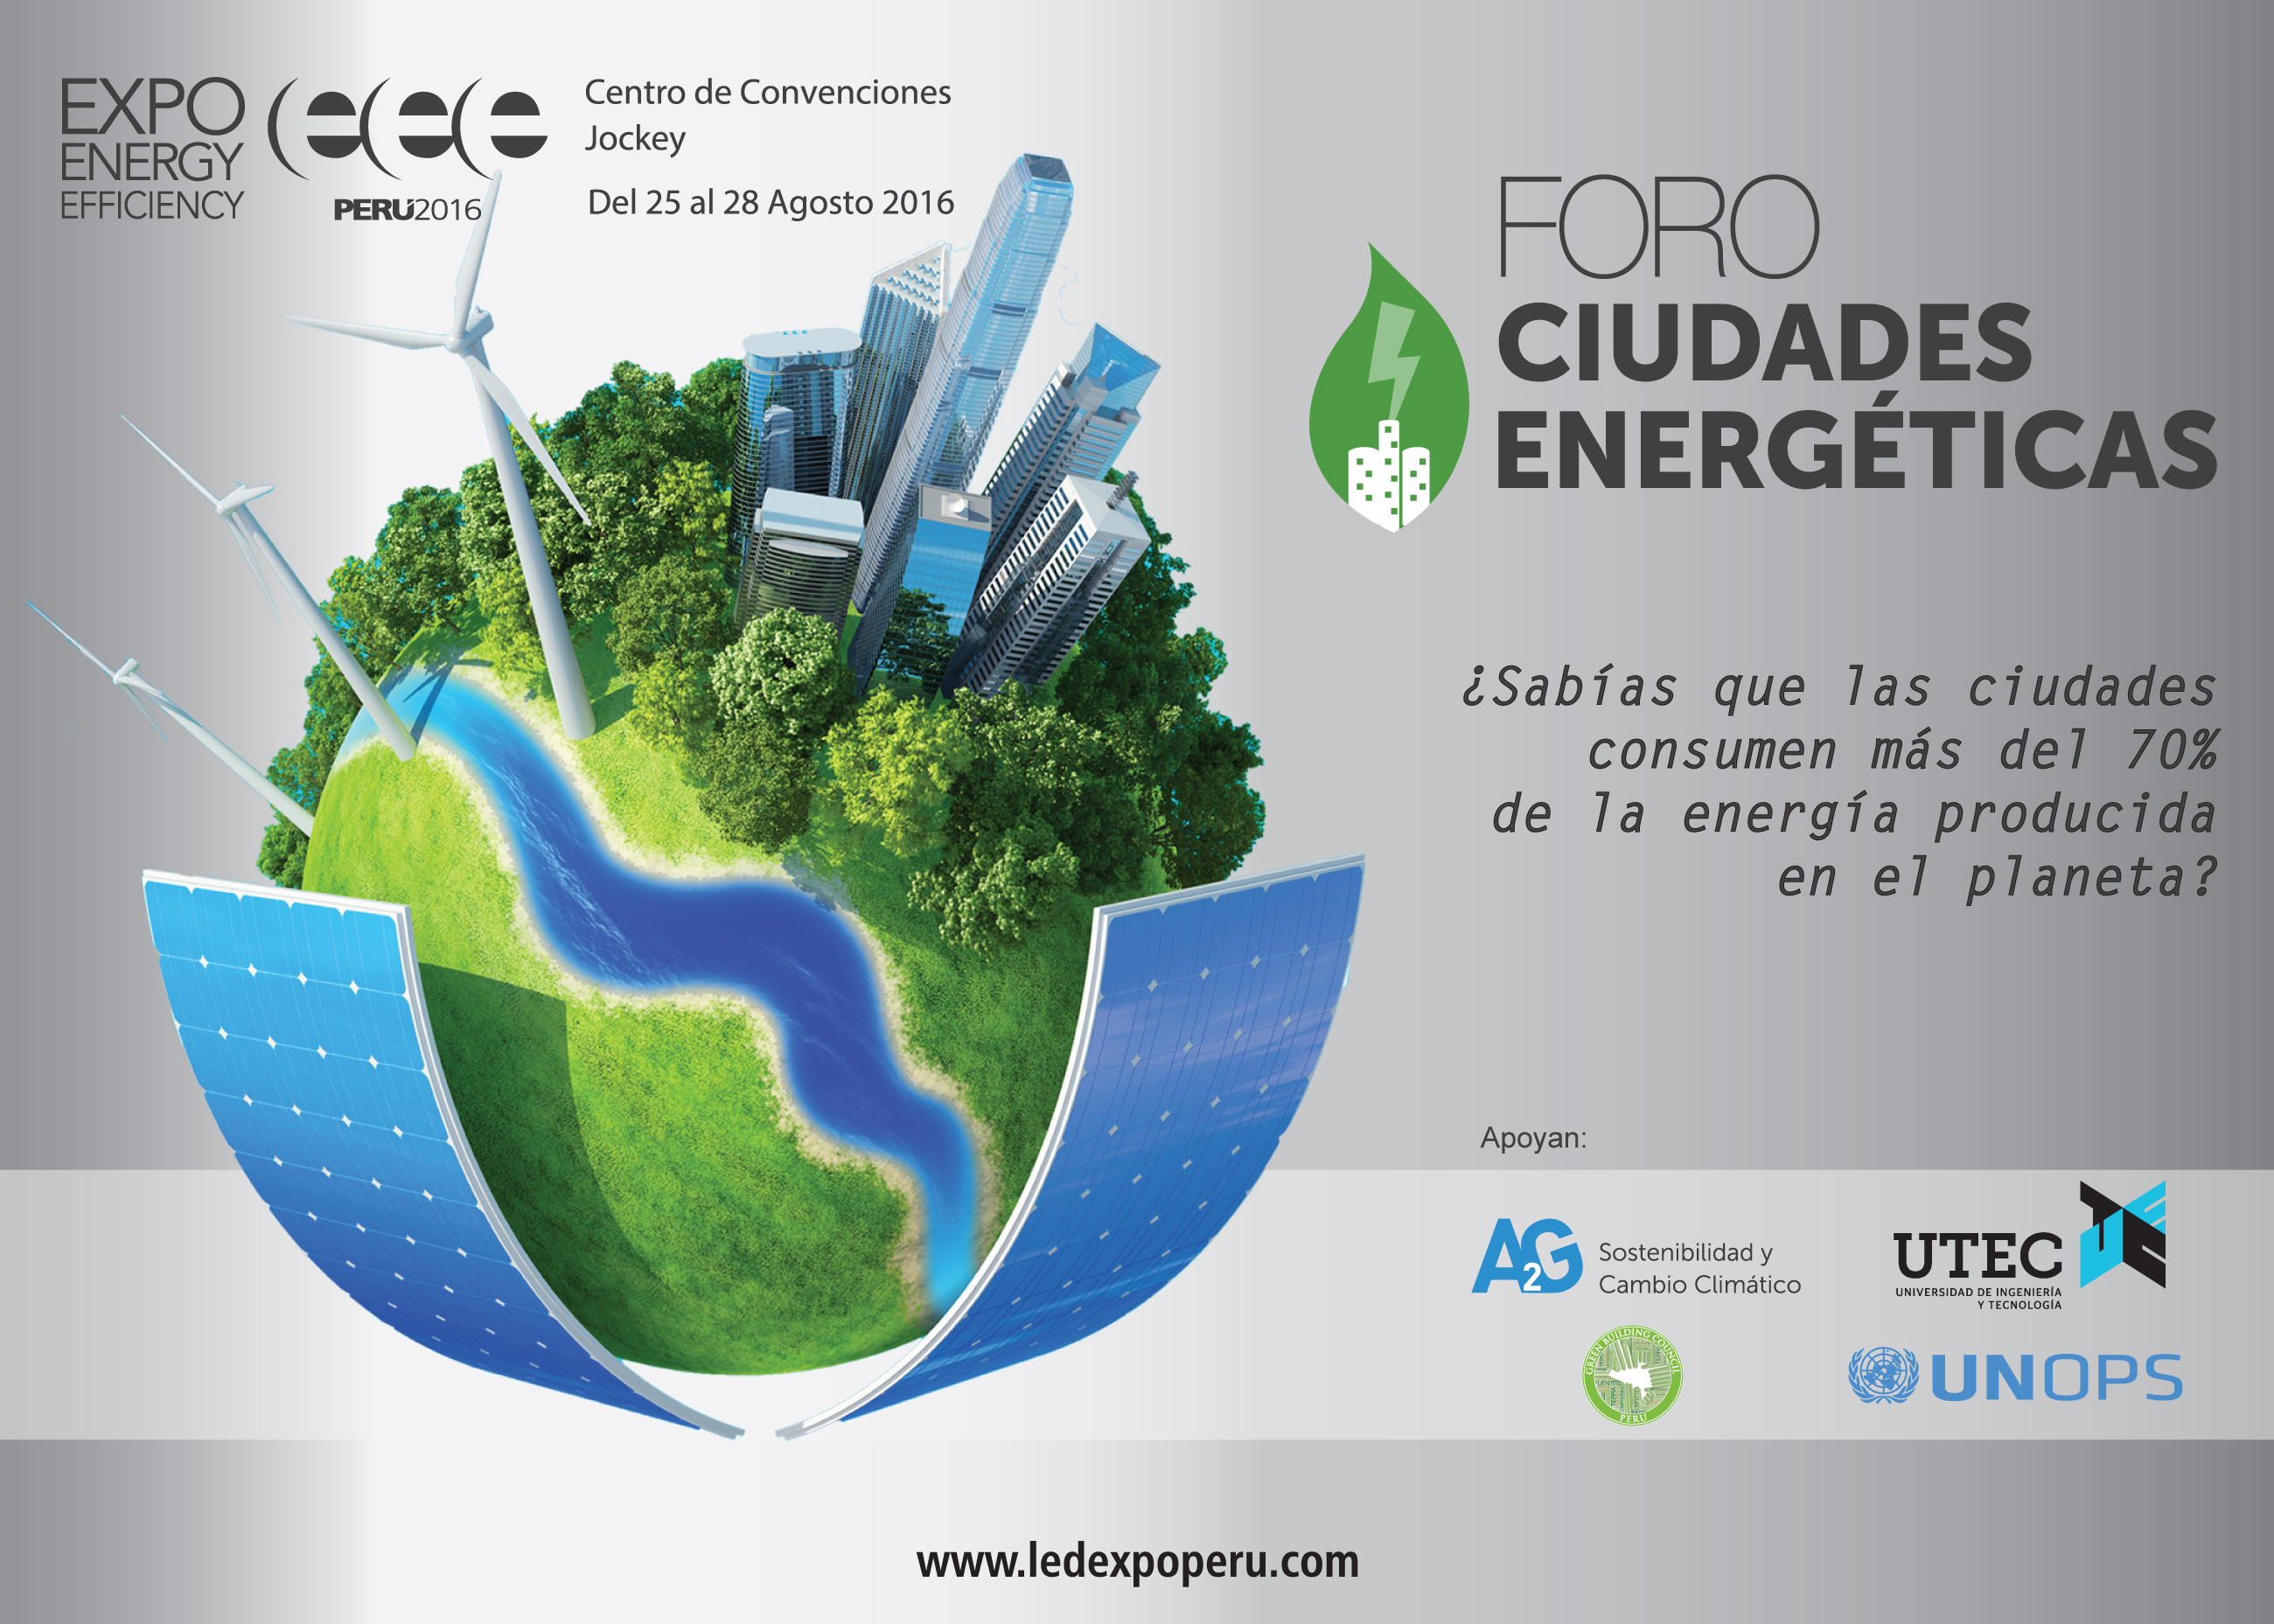 EXPO ENERGY EFFICIENCY Negocios, conocimientos e innovaciones en energía limpia